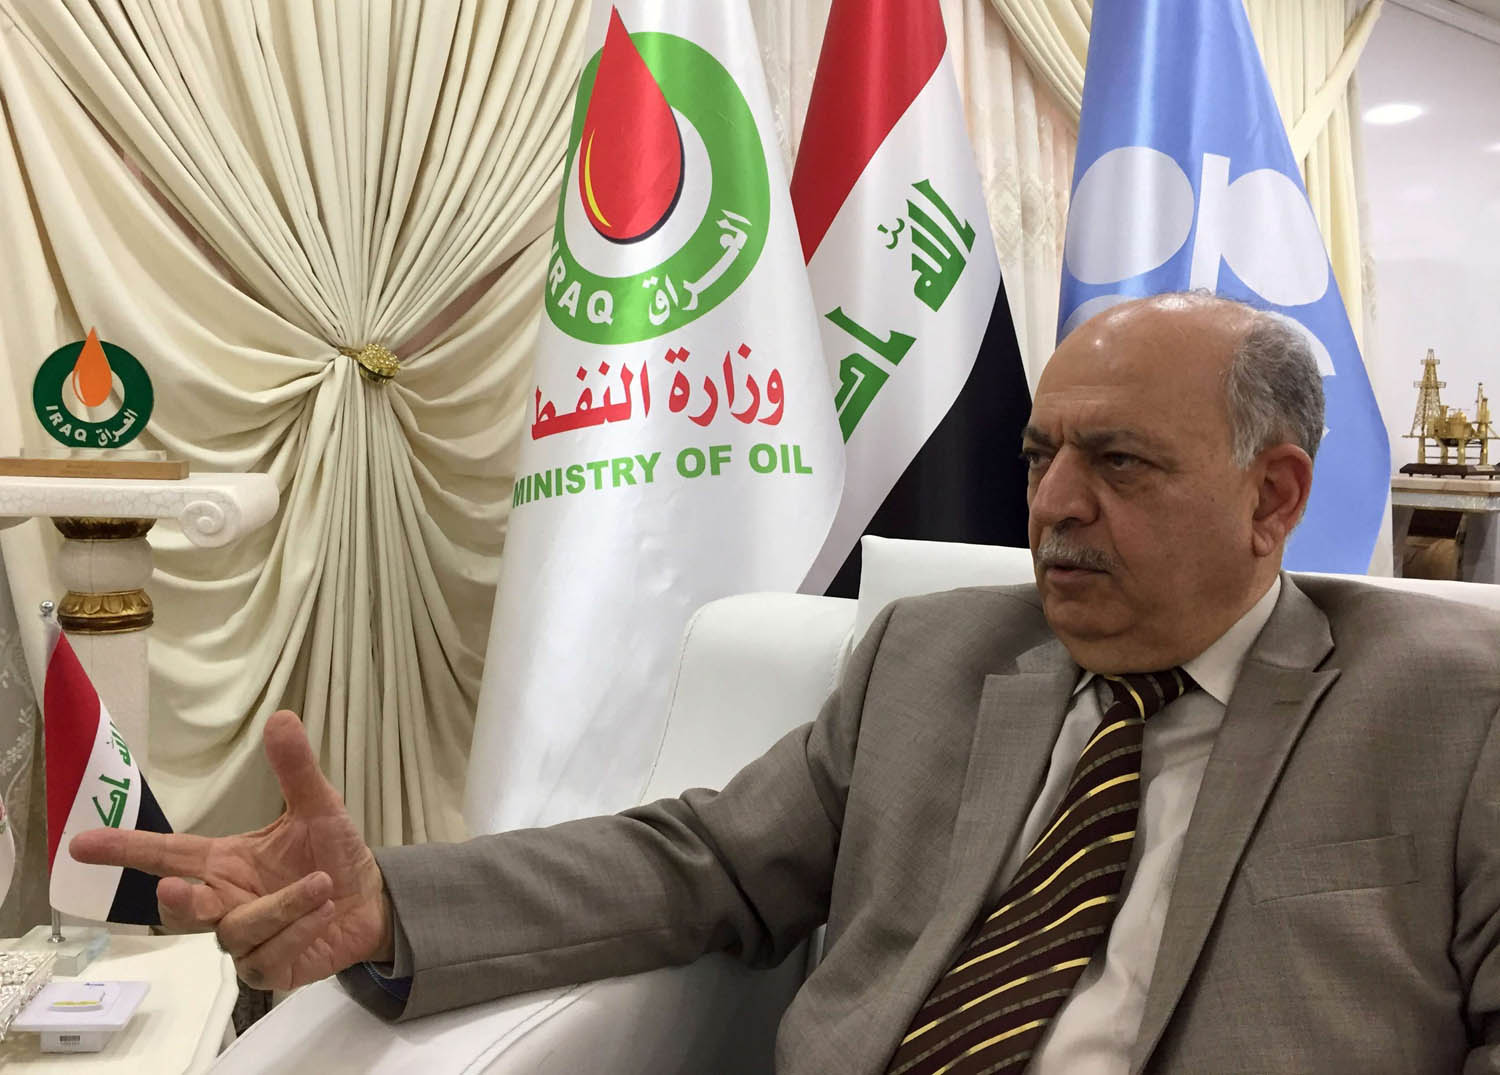 وزير النفط العراقي الجديد ثامر الغضبان يتحدث عن خطط وزارته